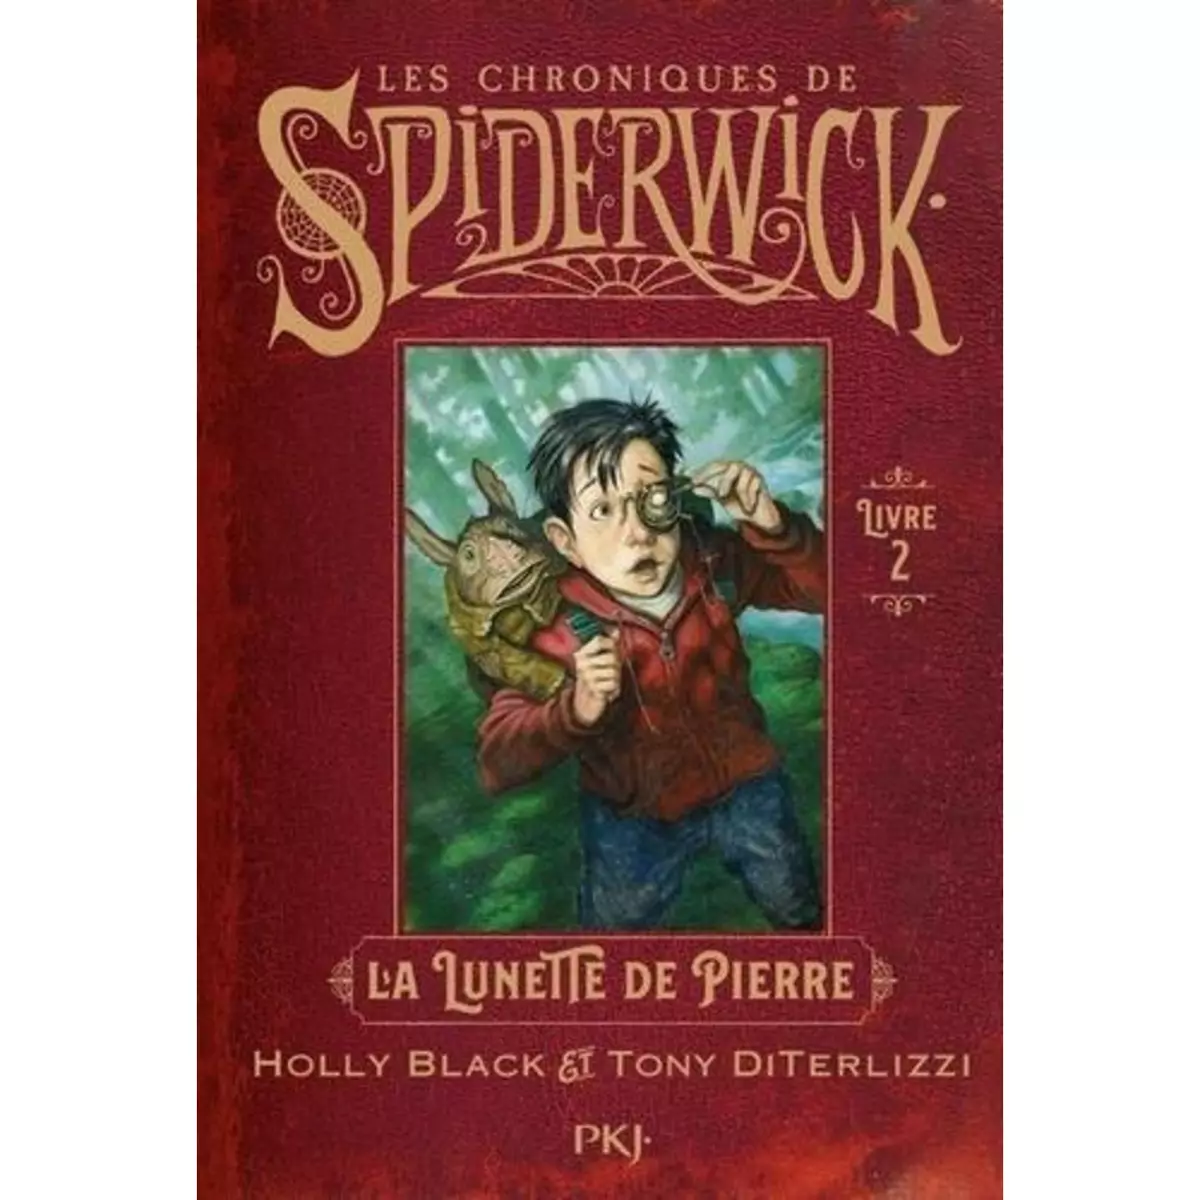  LES CHRONIQUES DE SPIDERWICK TOME 2 : LA LUNETTE DE PIERRE, Black Holly